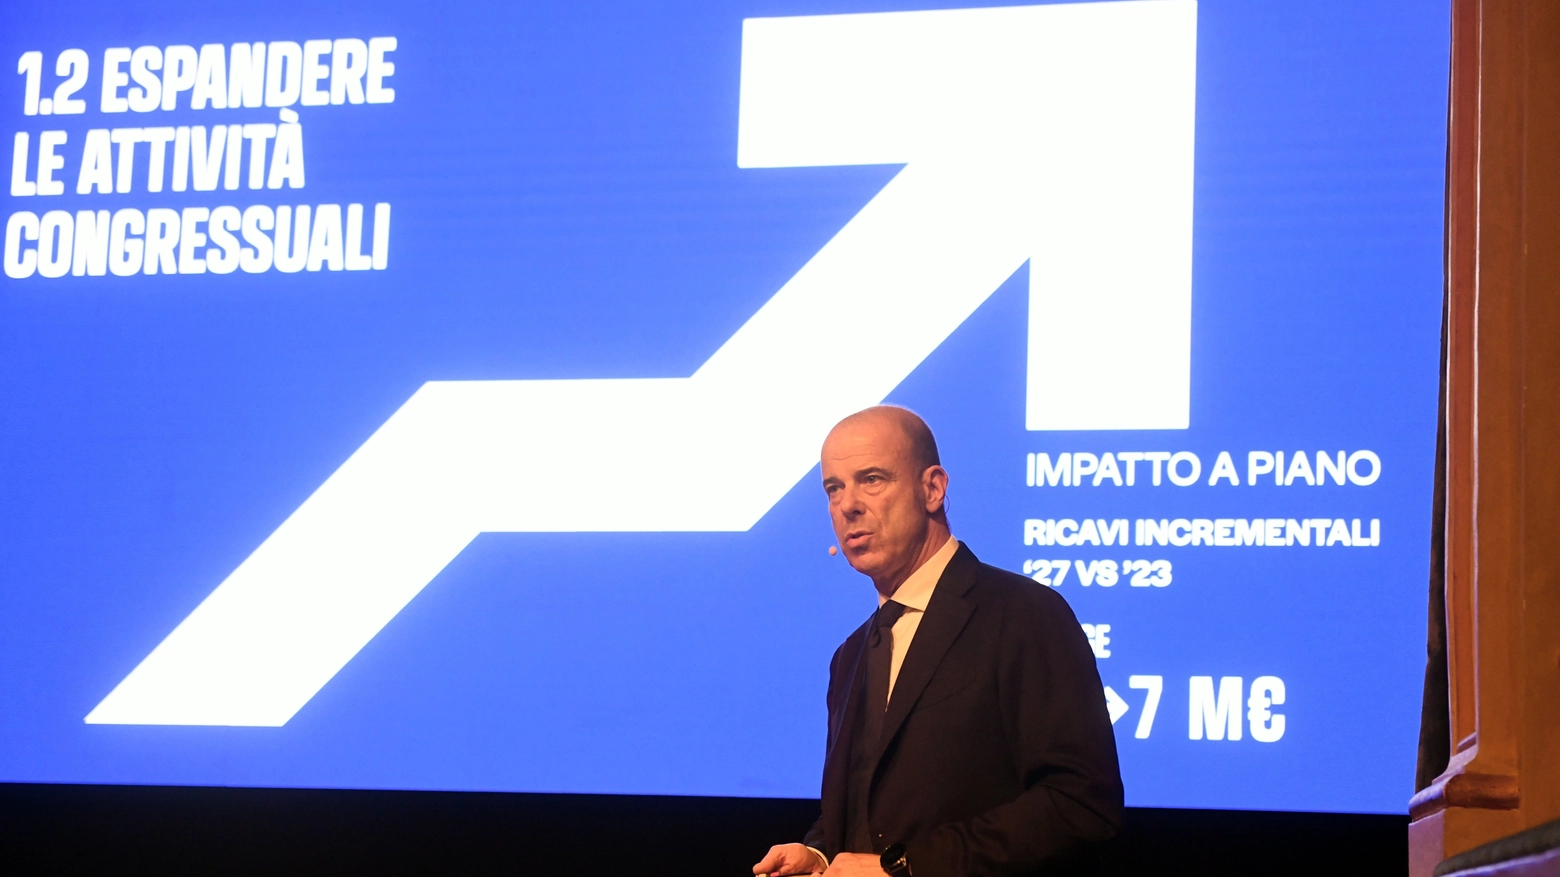 La trimestrale certifica un aumento di 24,2 milioni (su 72,4 totali). L’ad Francesco Conci: "Avvio positivo del piano strategico".